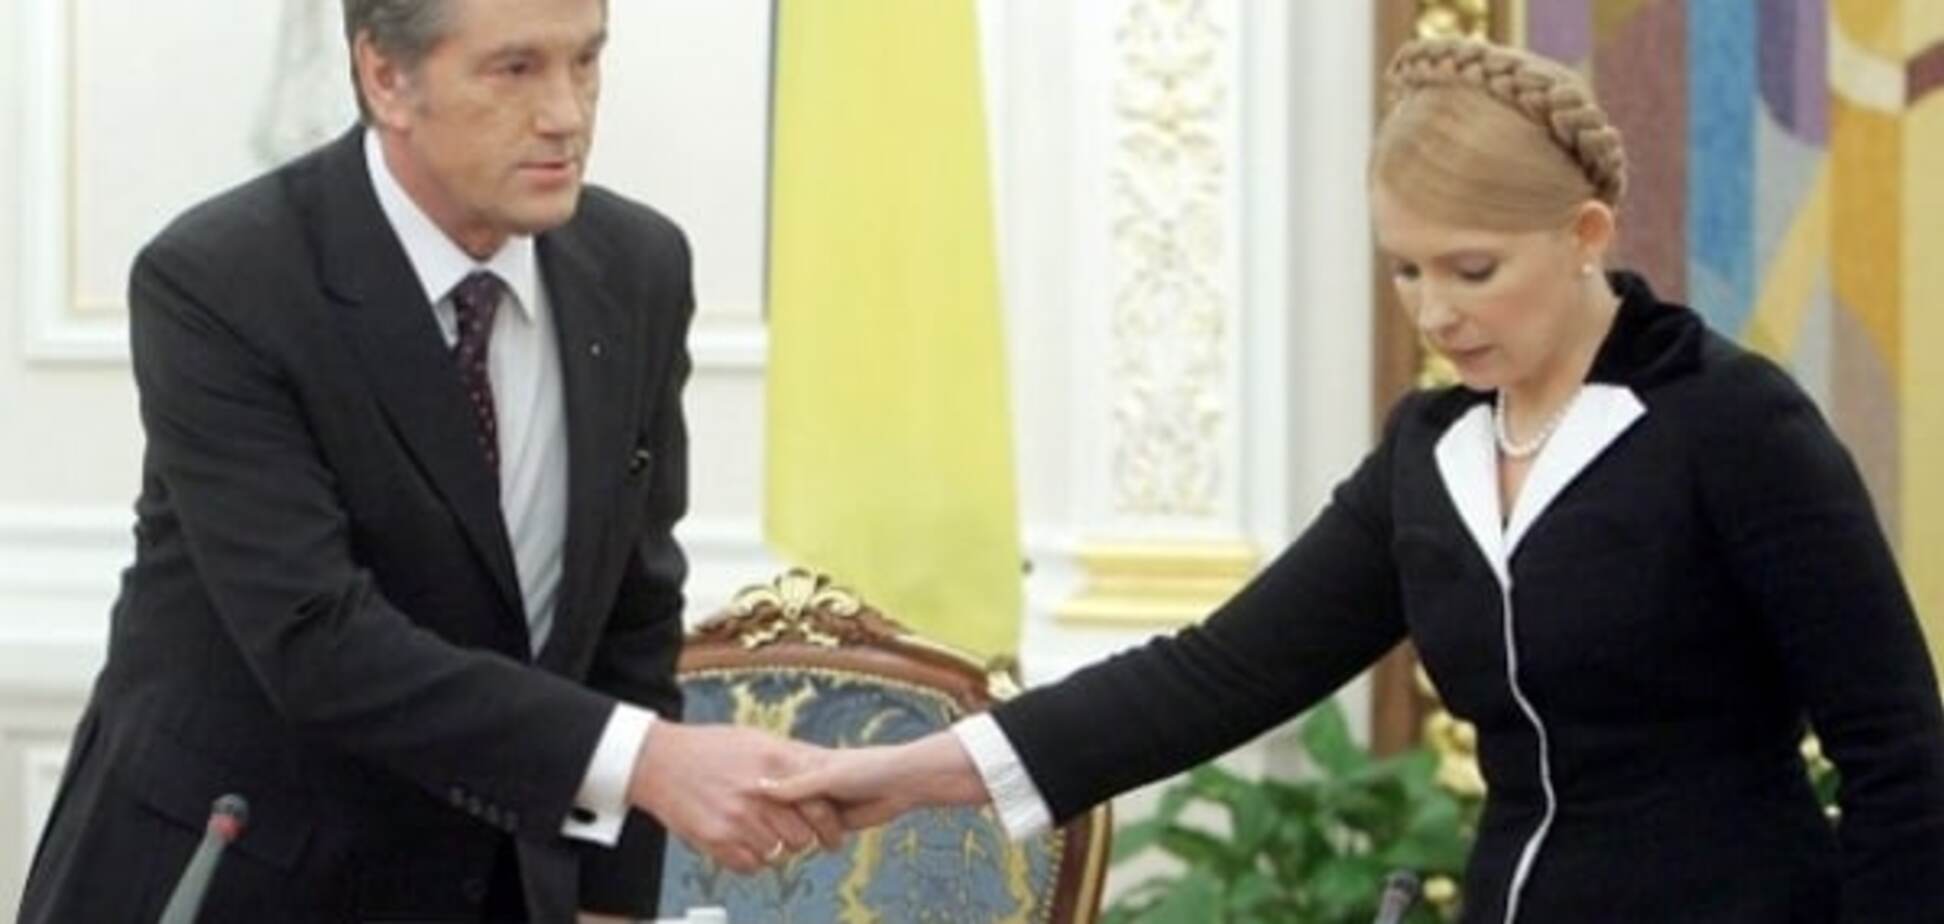 Країну зливають: Тарута розповів, як 'газова принцеса' Тимошенко пішла по стопах Ющенка